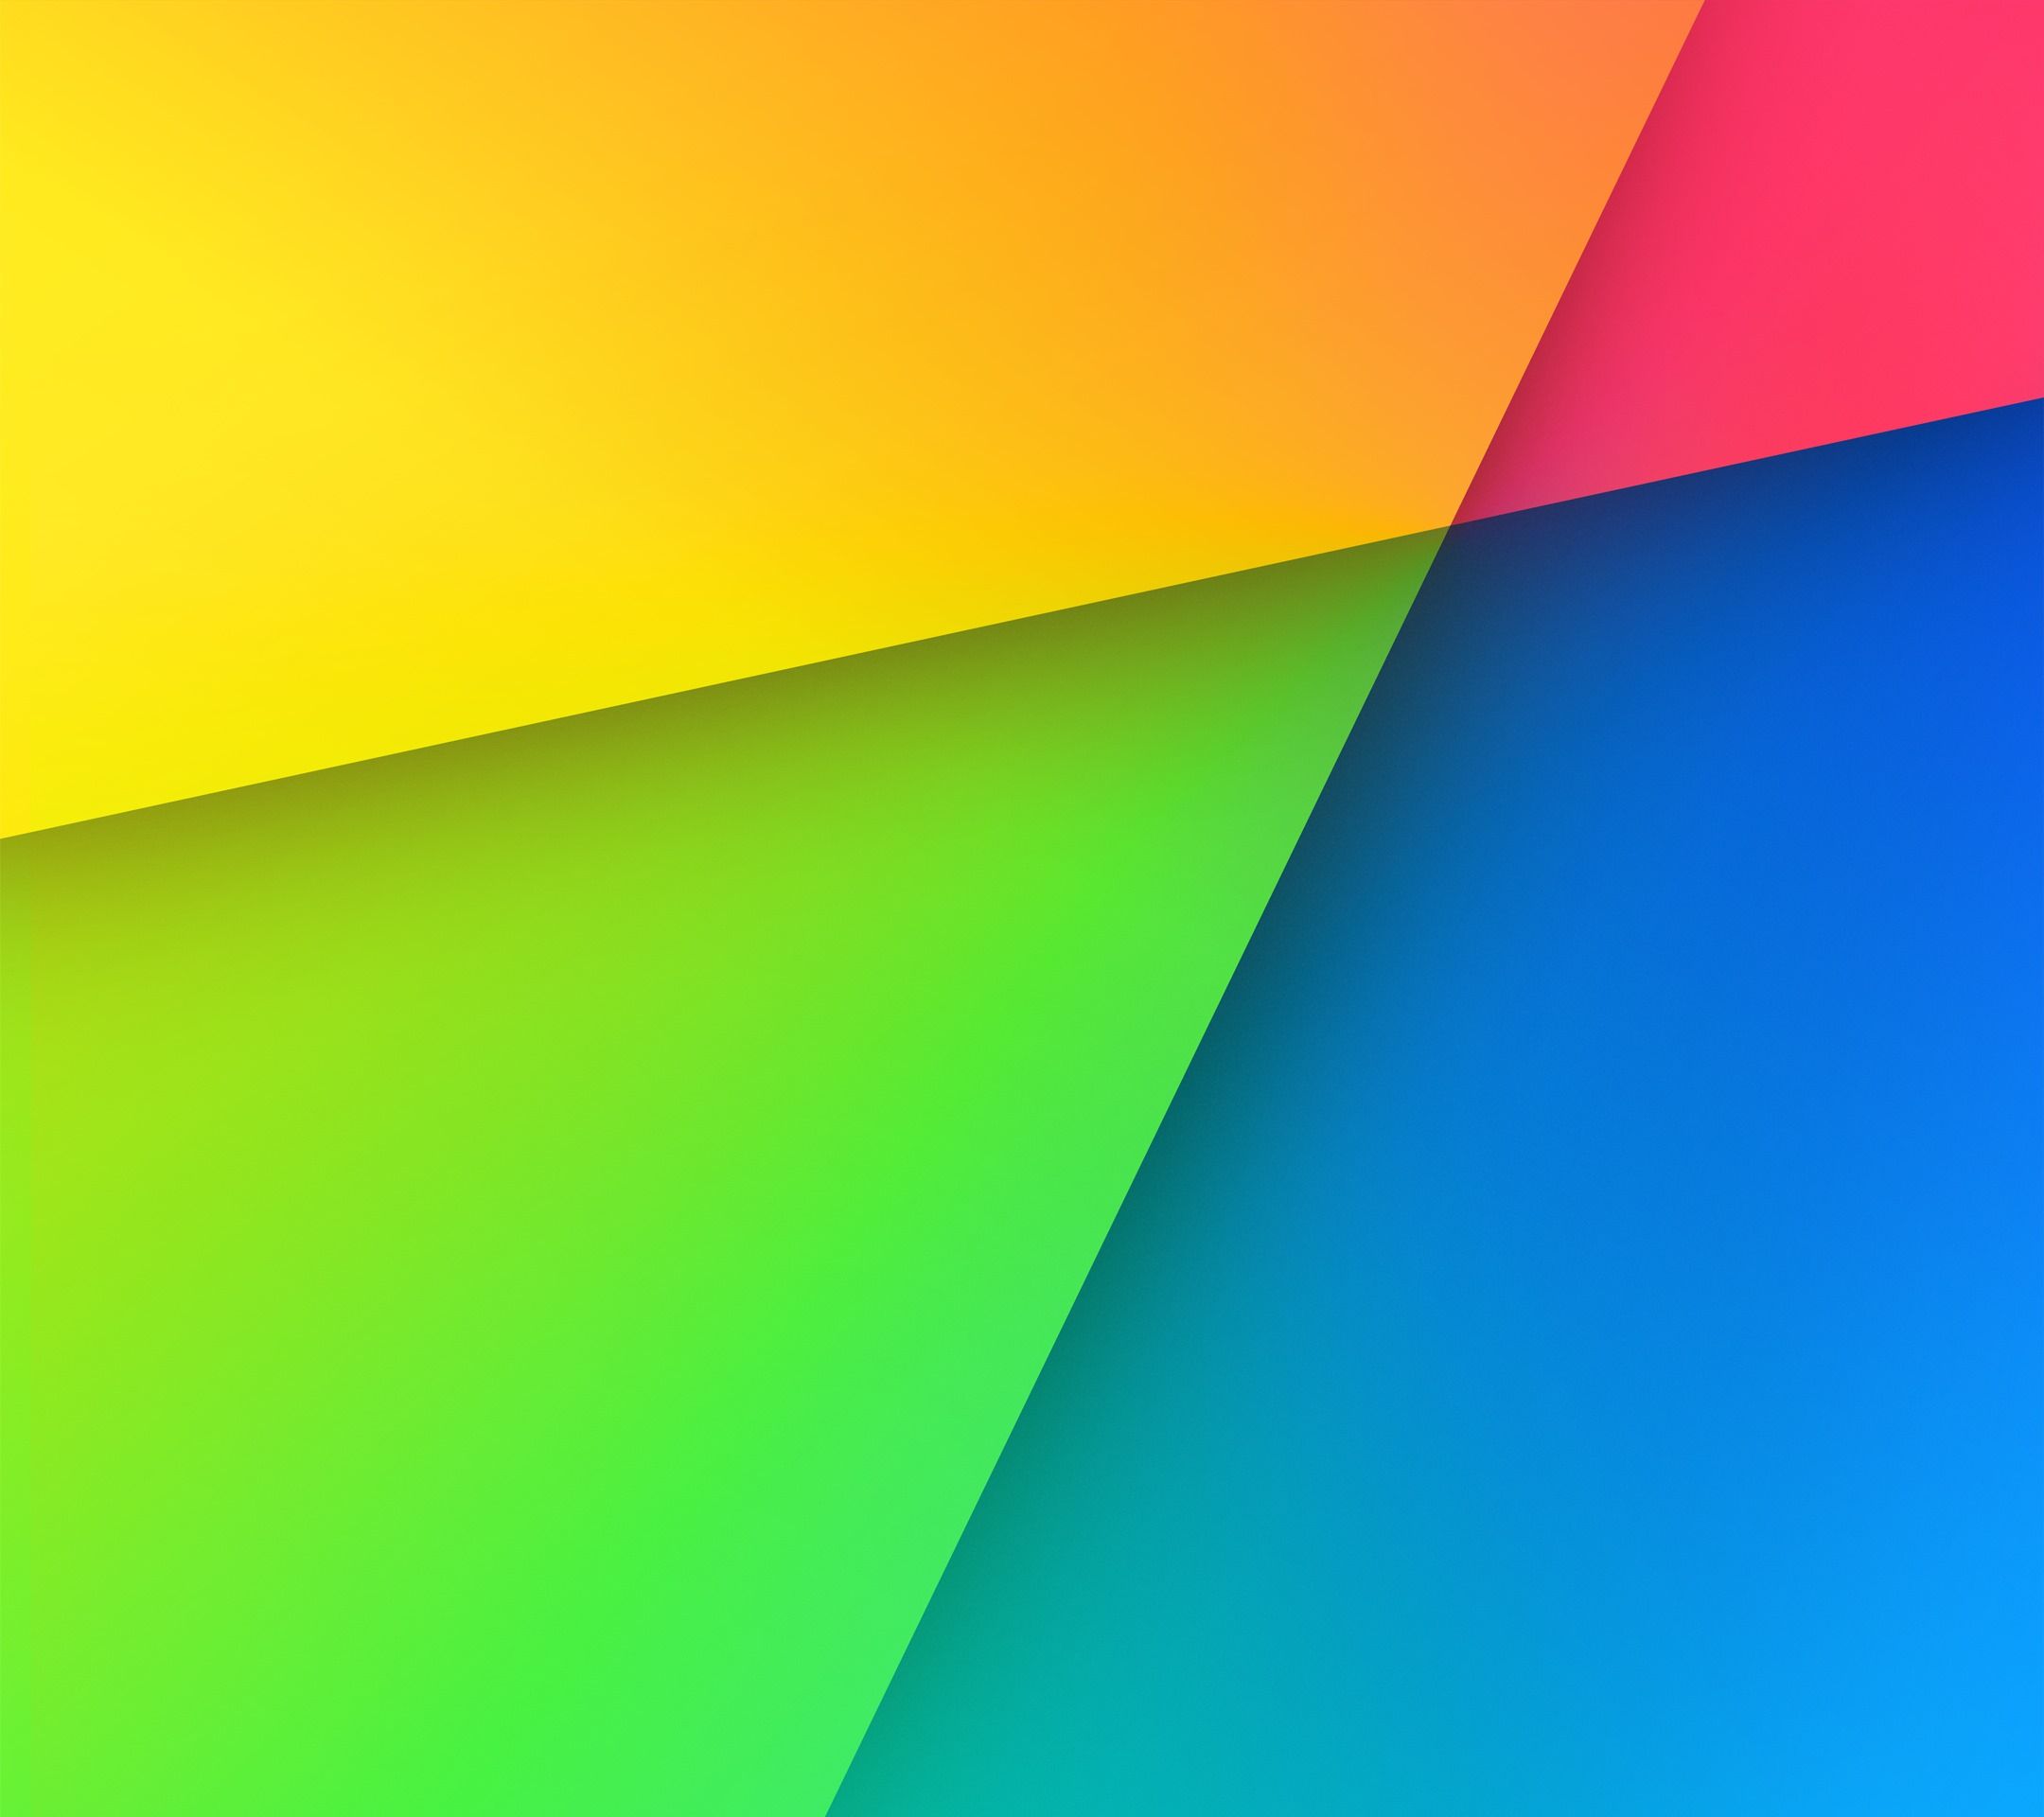 Download & Set Official Default Wallpapers of Nexus 7 (2013) in ...